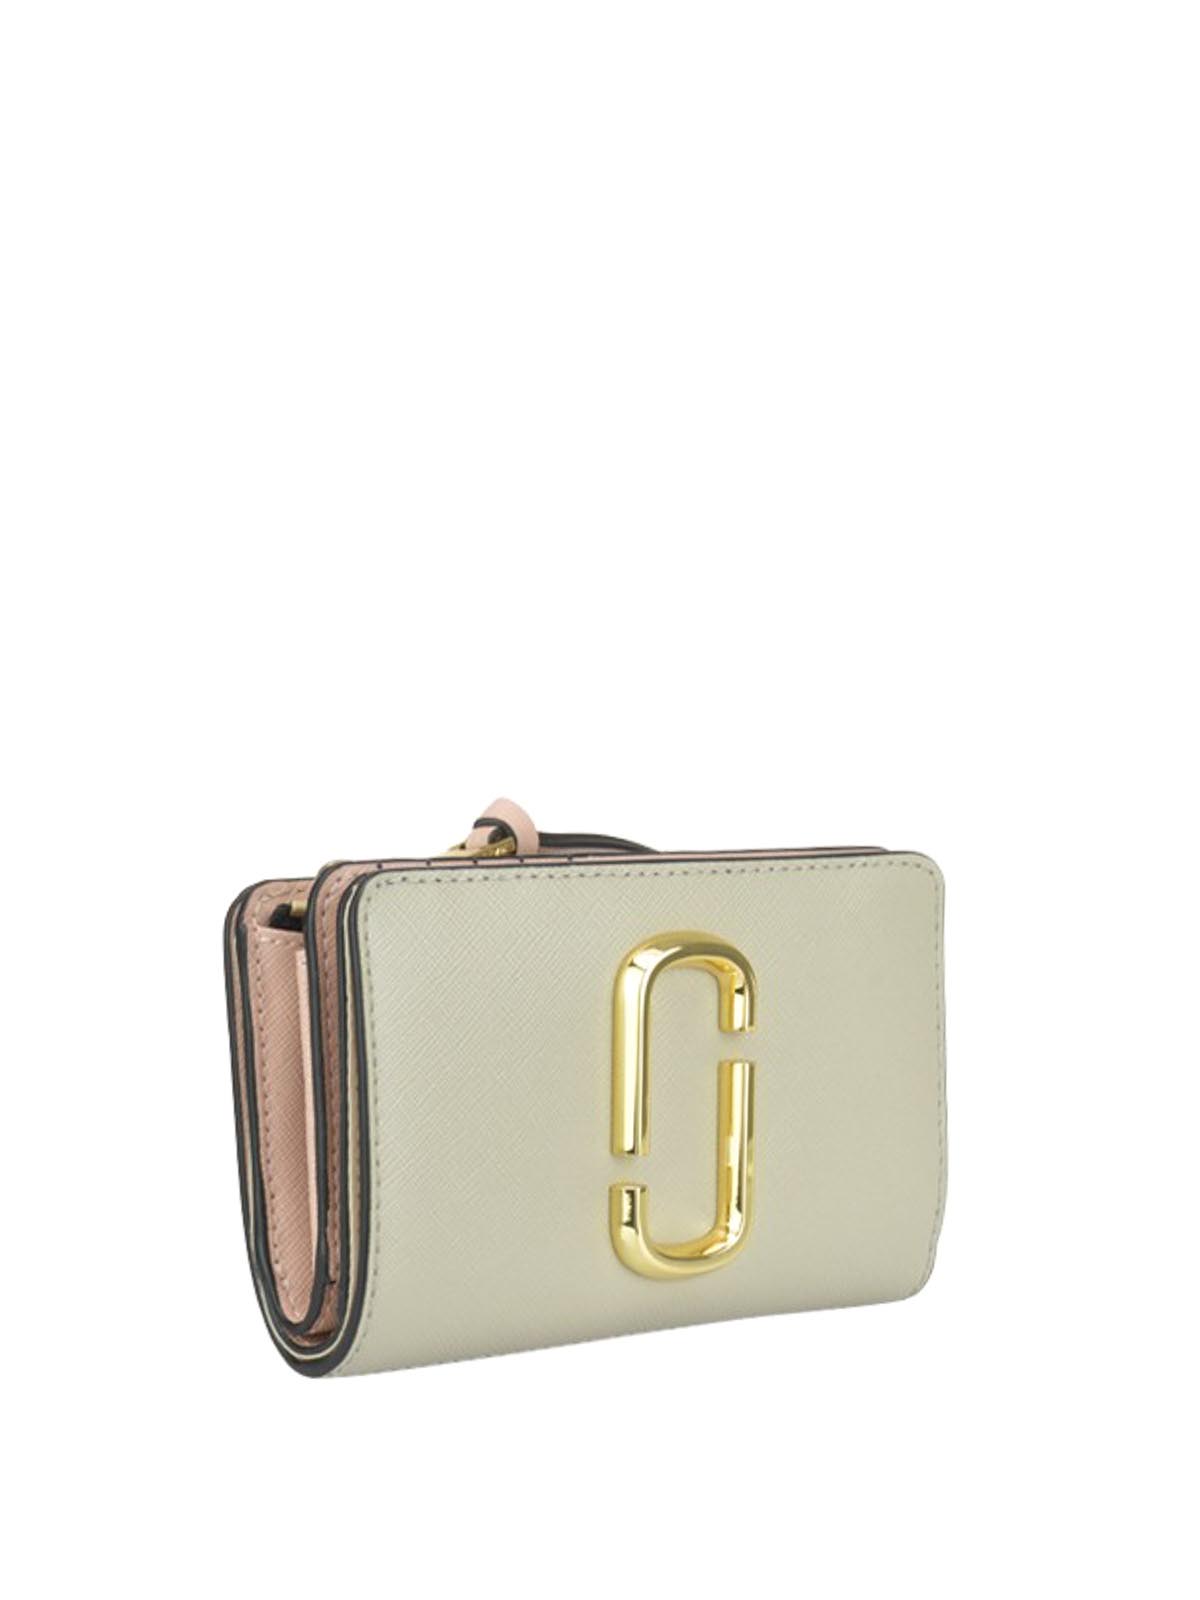 Voorkomen kousen geld Wallets & purses Marc Jacobs - Snapshot Compact wallet - M0014281088